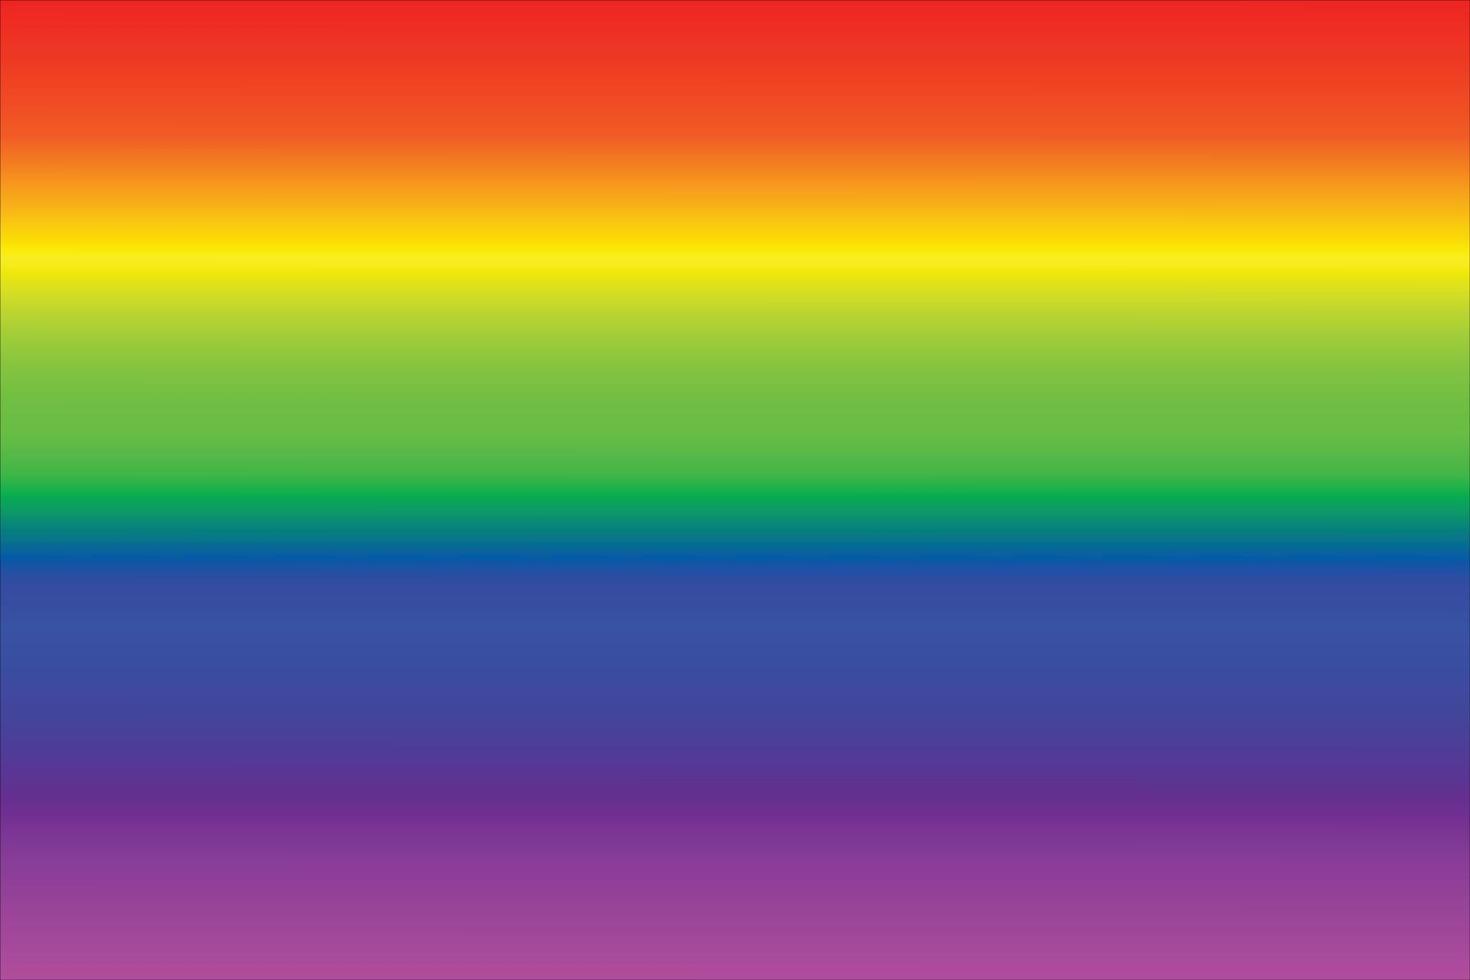 gradación de color del arco iris vector